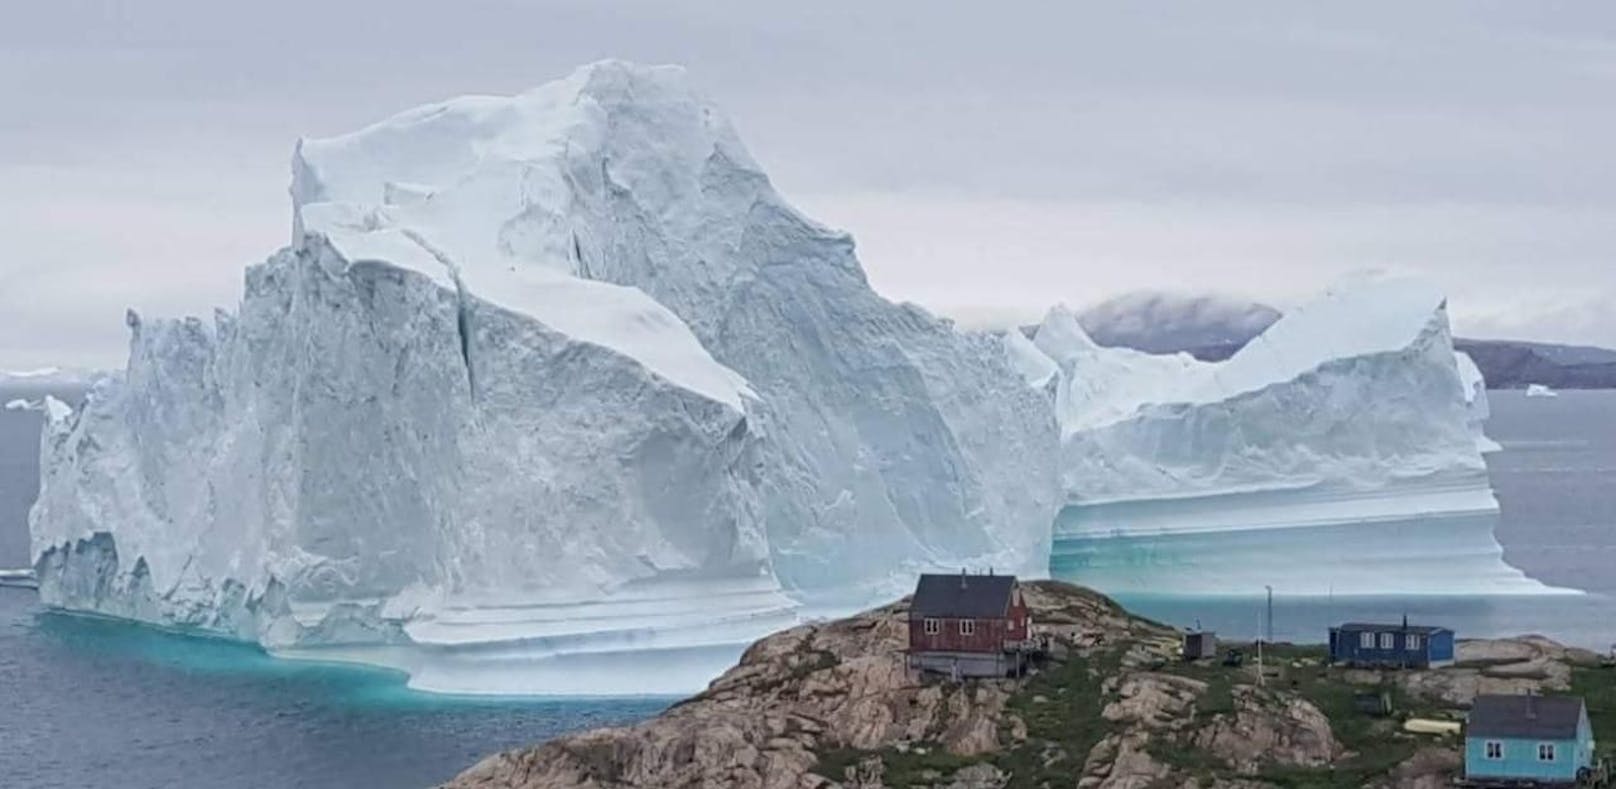 Grönland will sein Schmelzwasser verkaufen